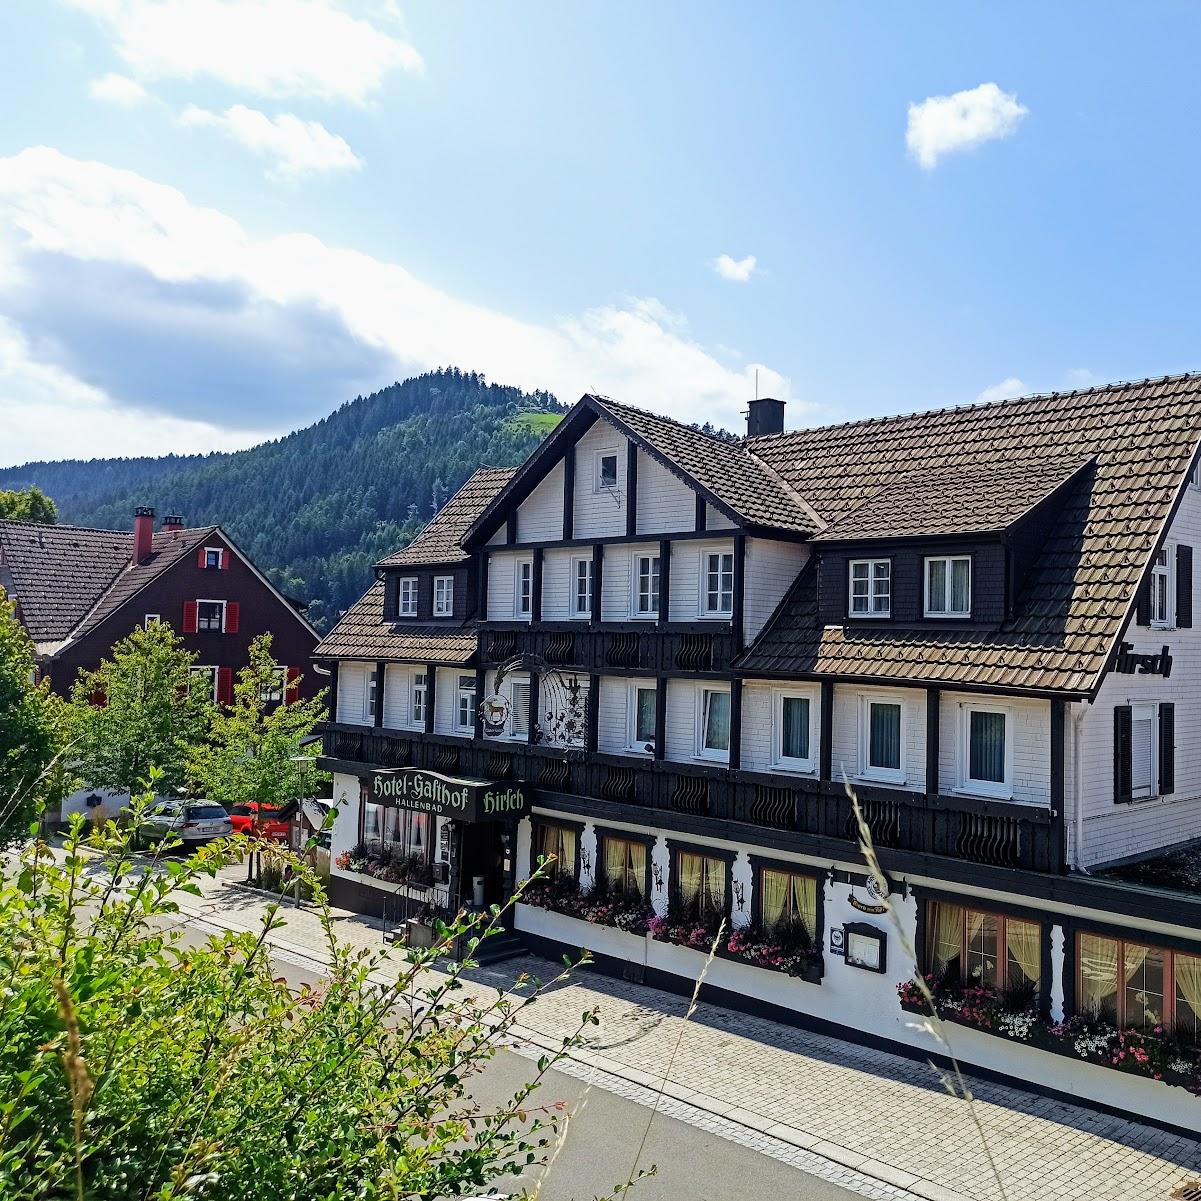 Restaurant "Hotel-Restaurant Hirsch" in  Baiersbronn